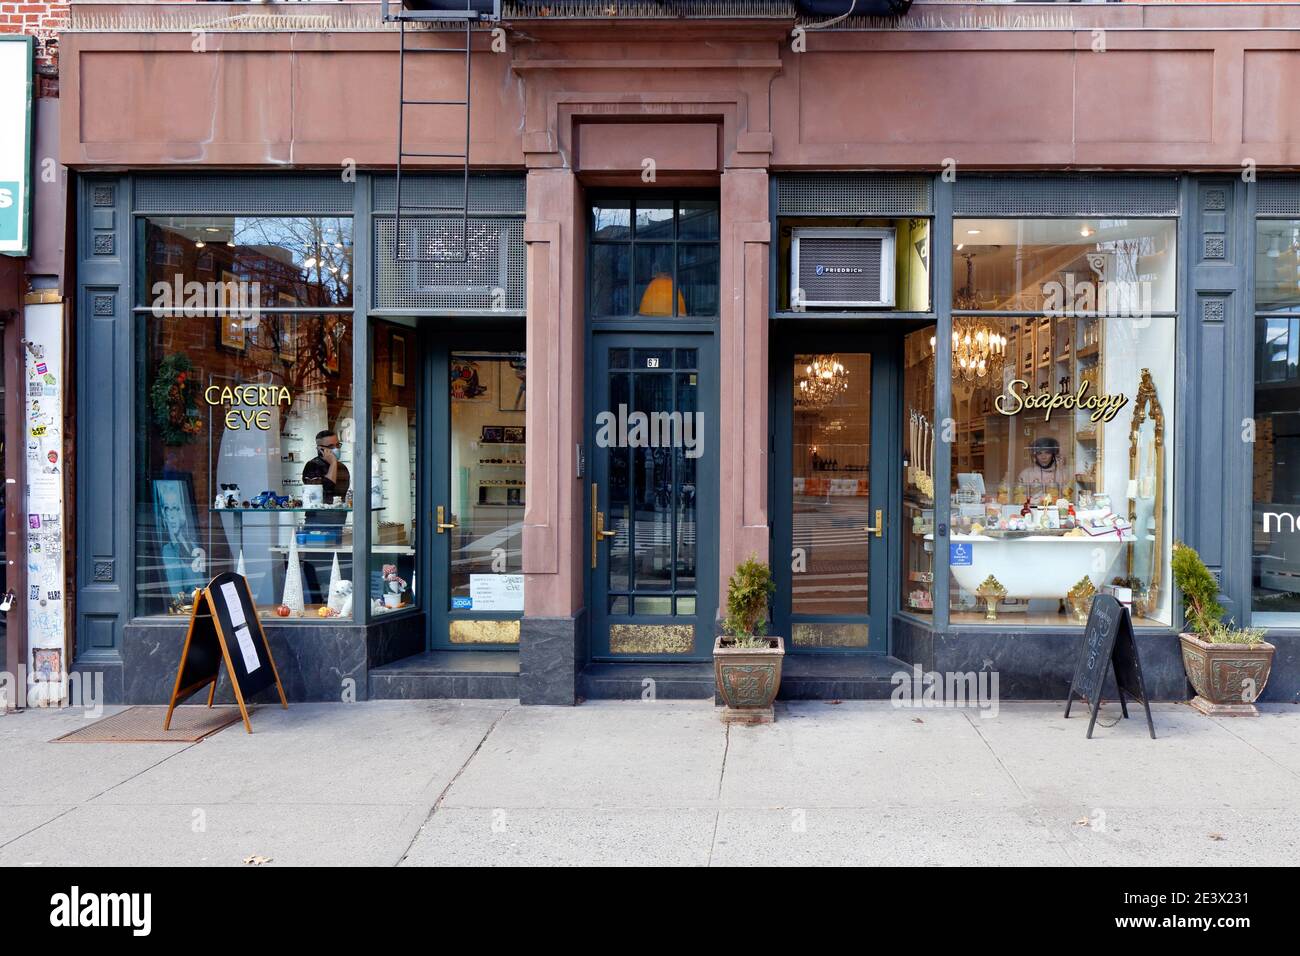 Caserta Eye, Soapology, 67 8th Ave, New York, foto di un ottico sul negozio di articoli di bellezza nel quartiere di Greenwich Village. Foto Stock